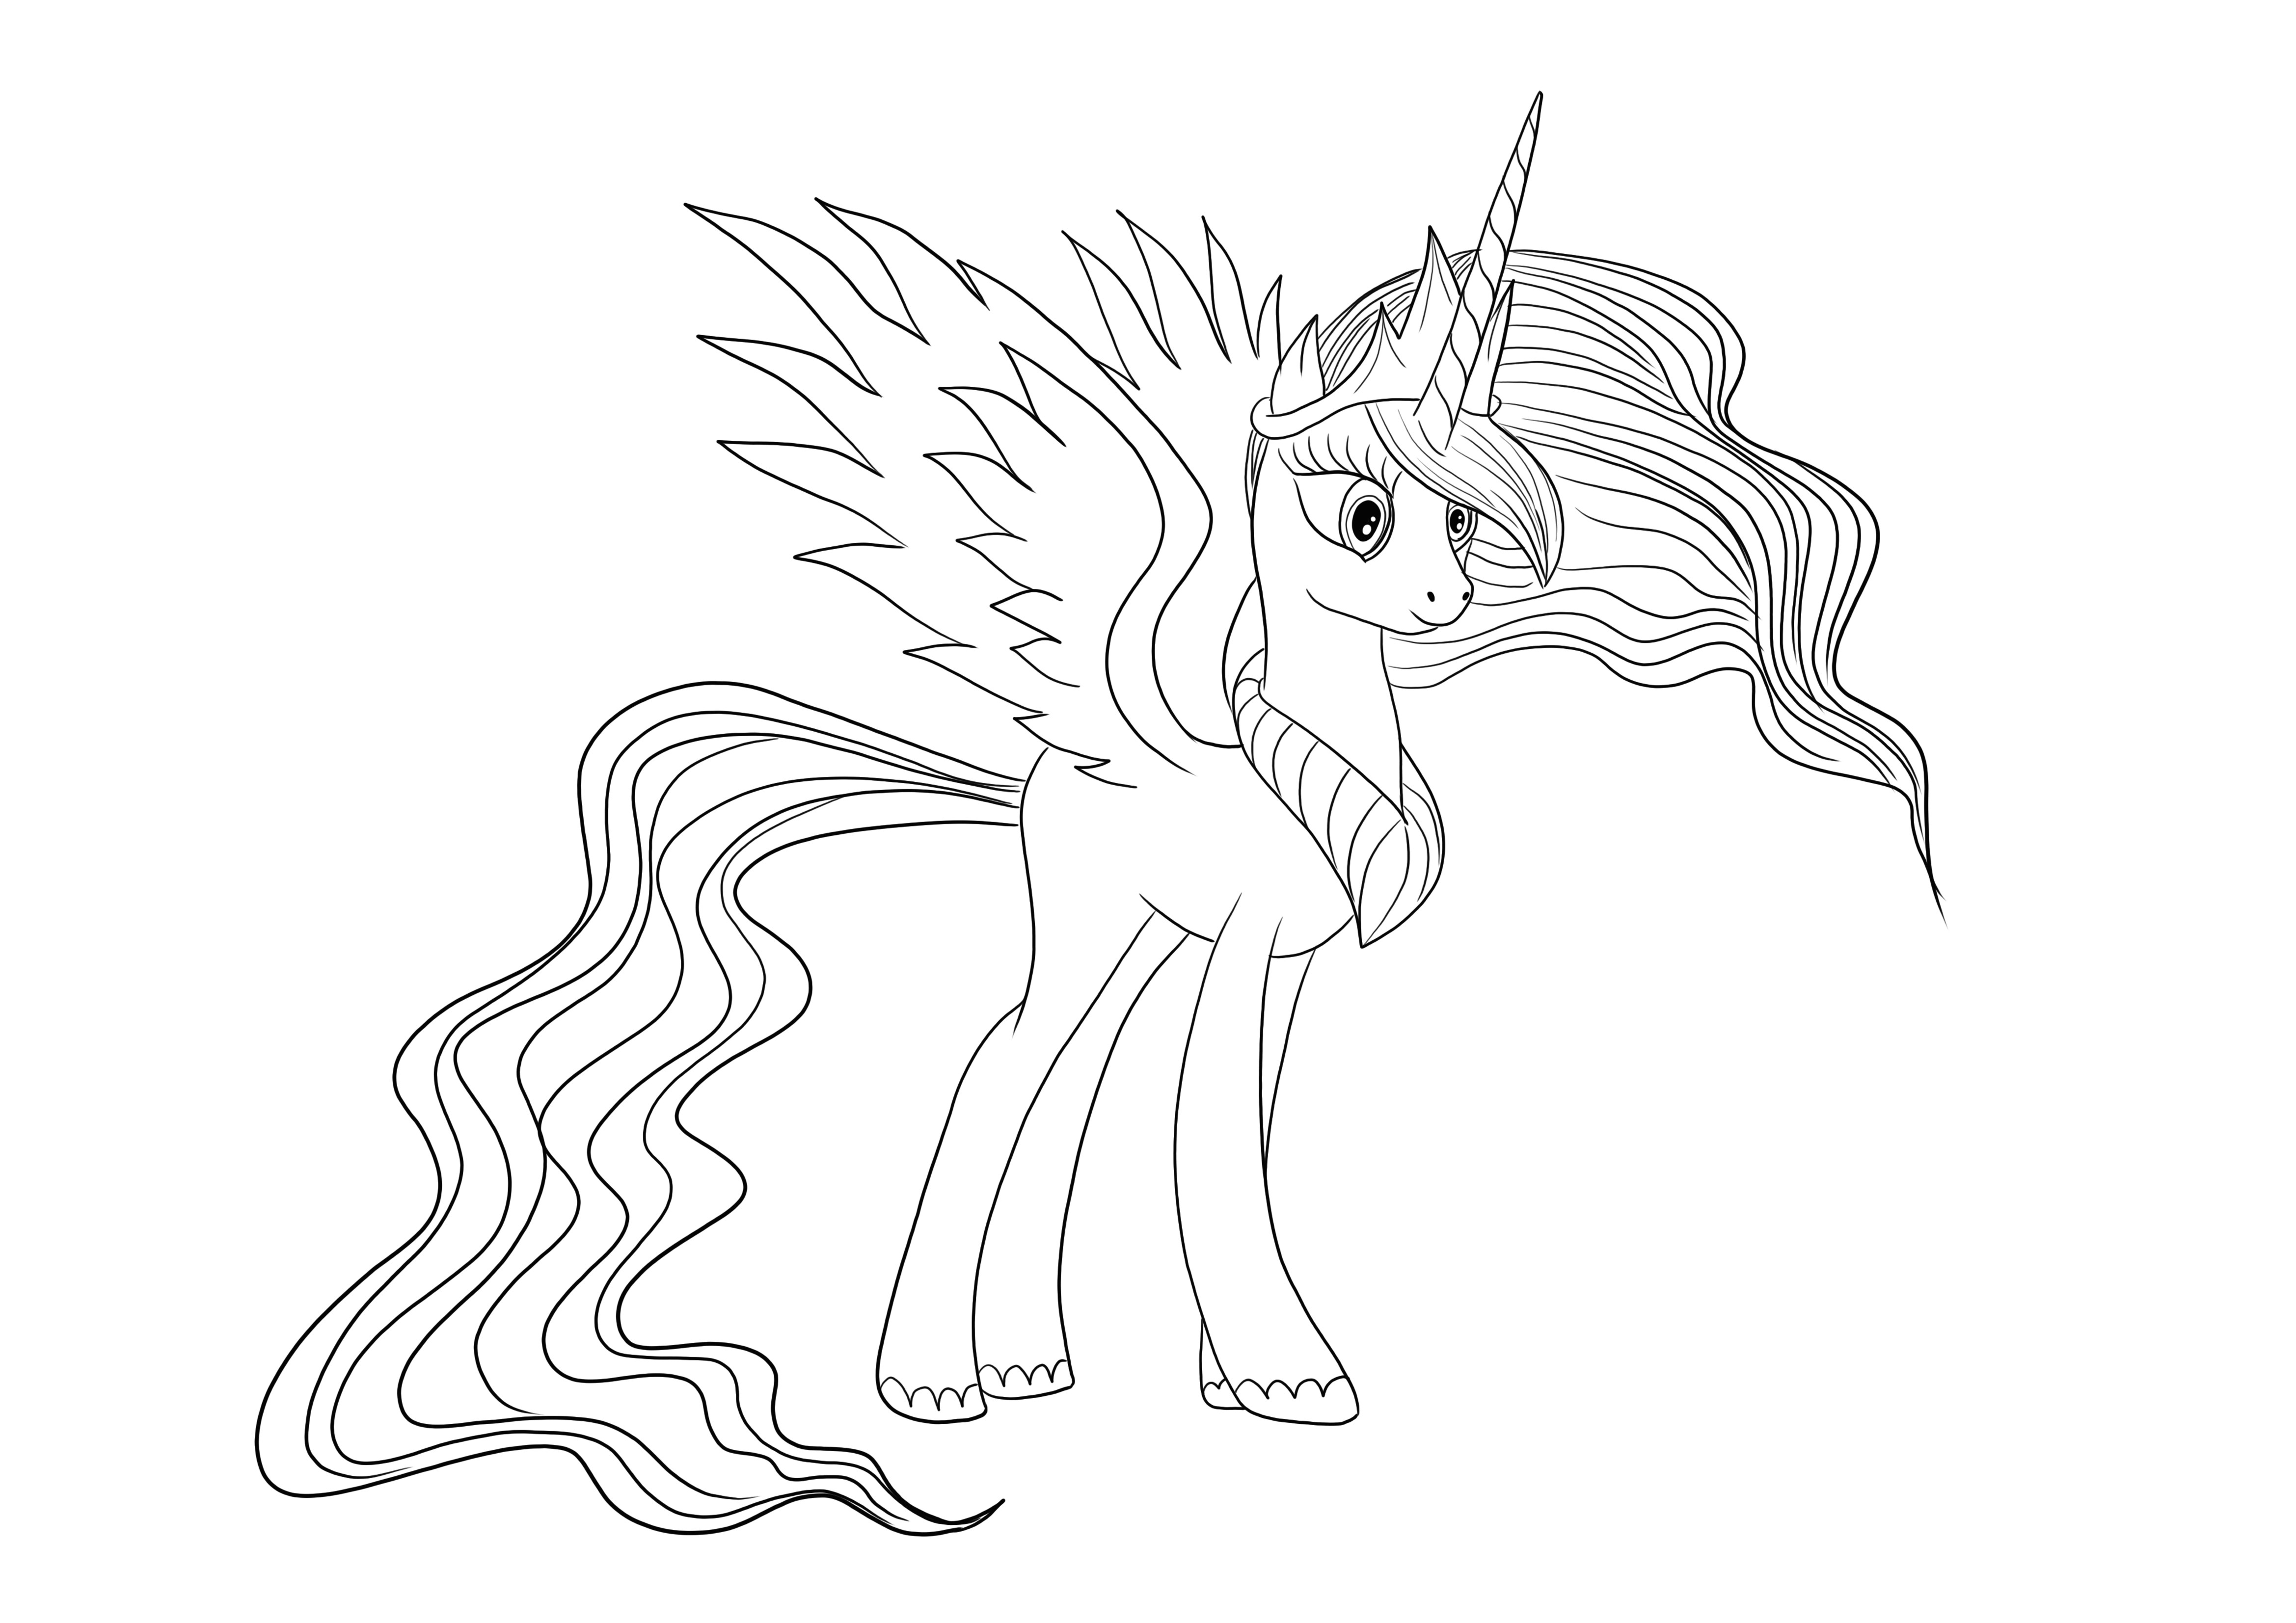 Gracious Princess Celestia de Little Pony para download gratuito e imagem colorida